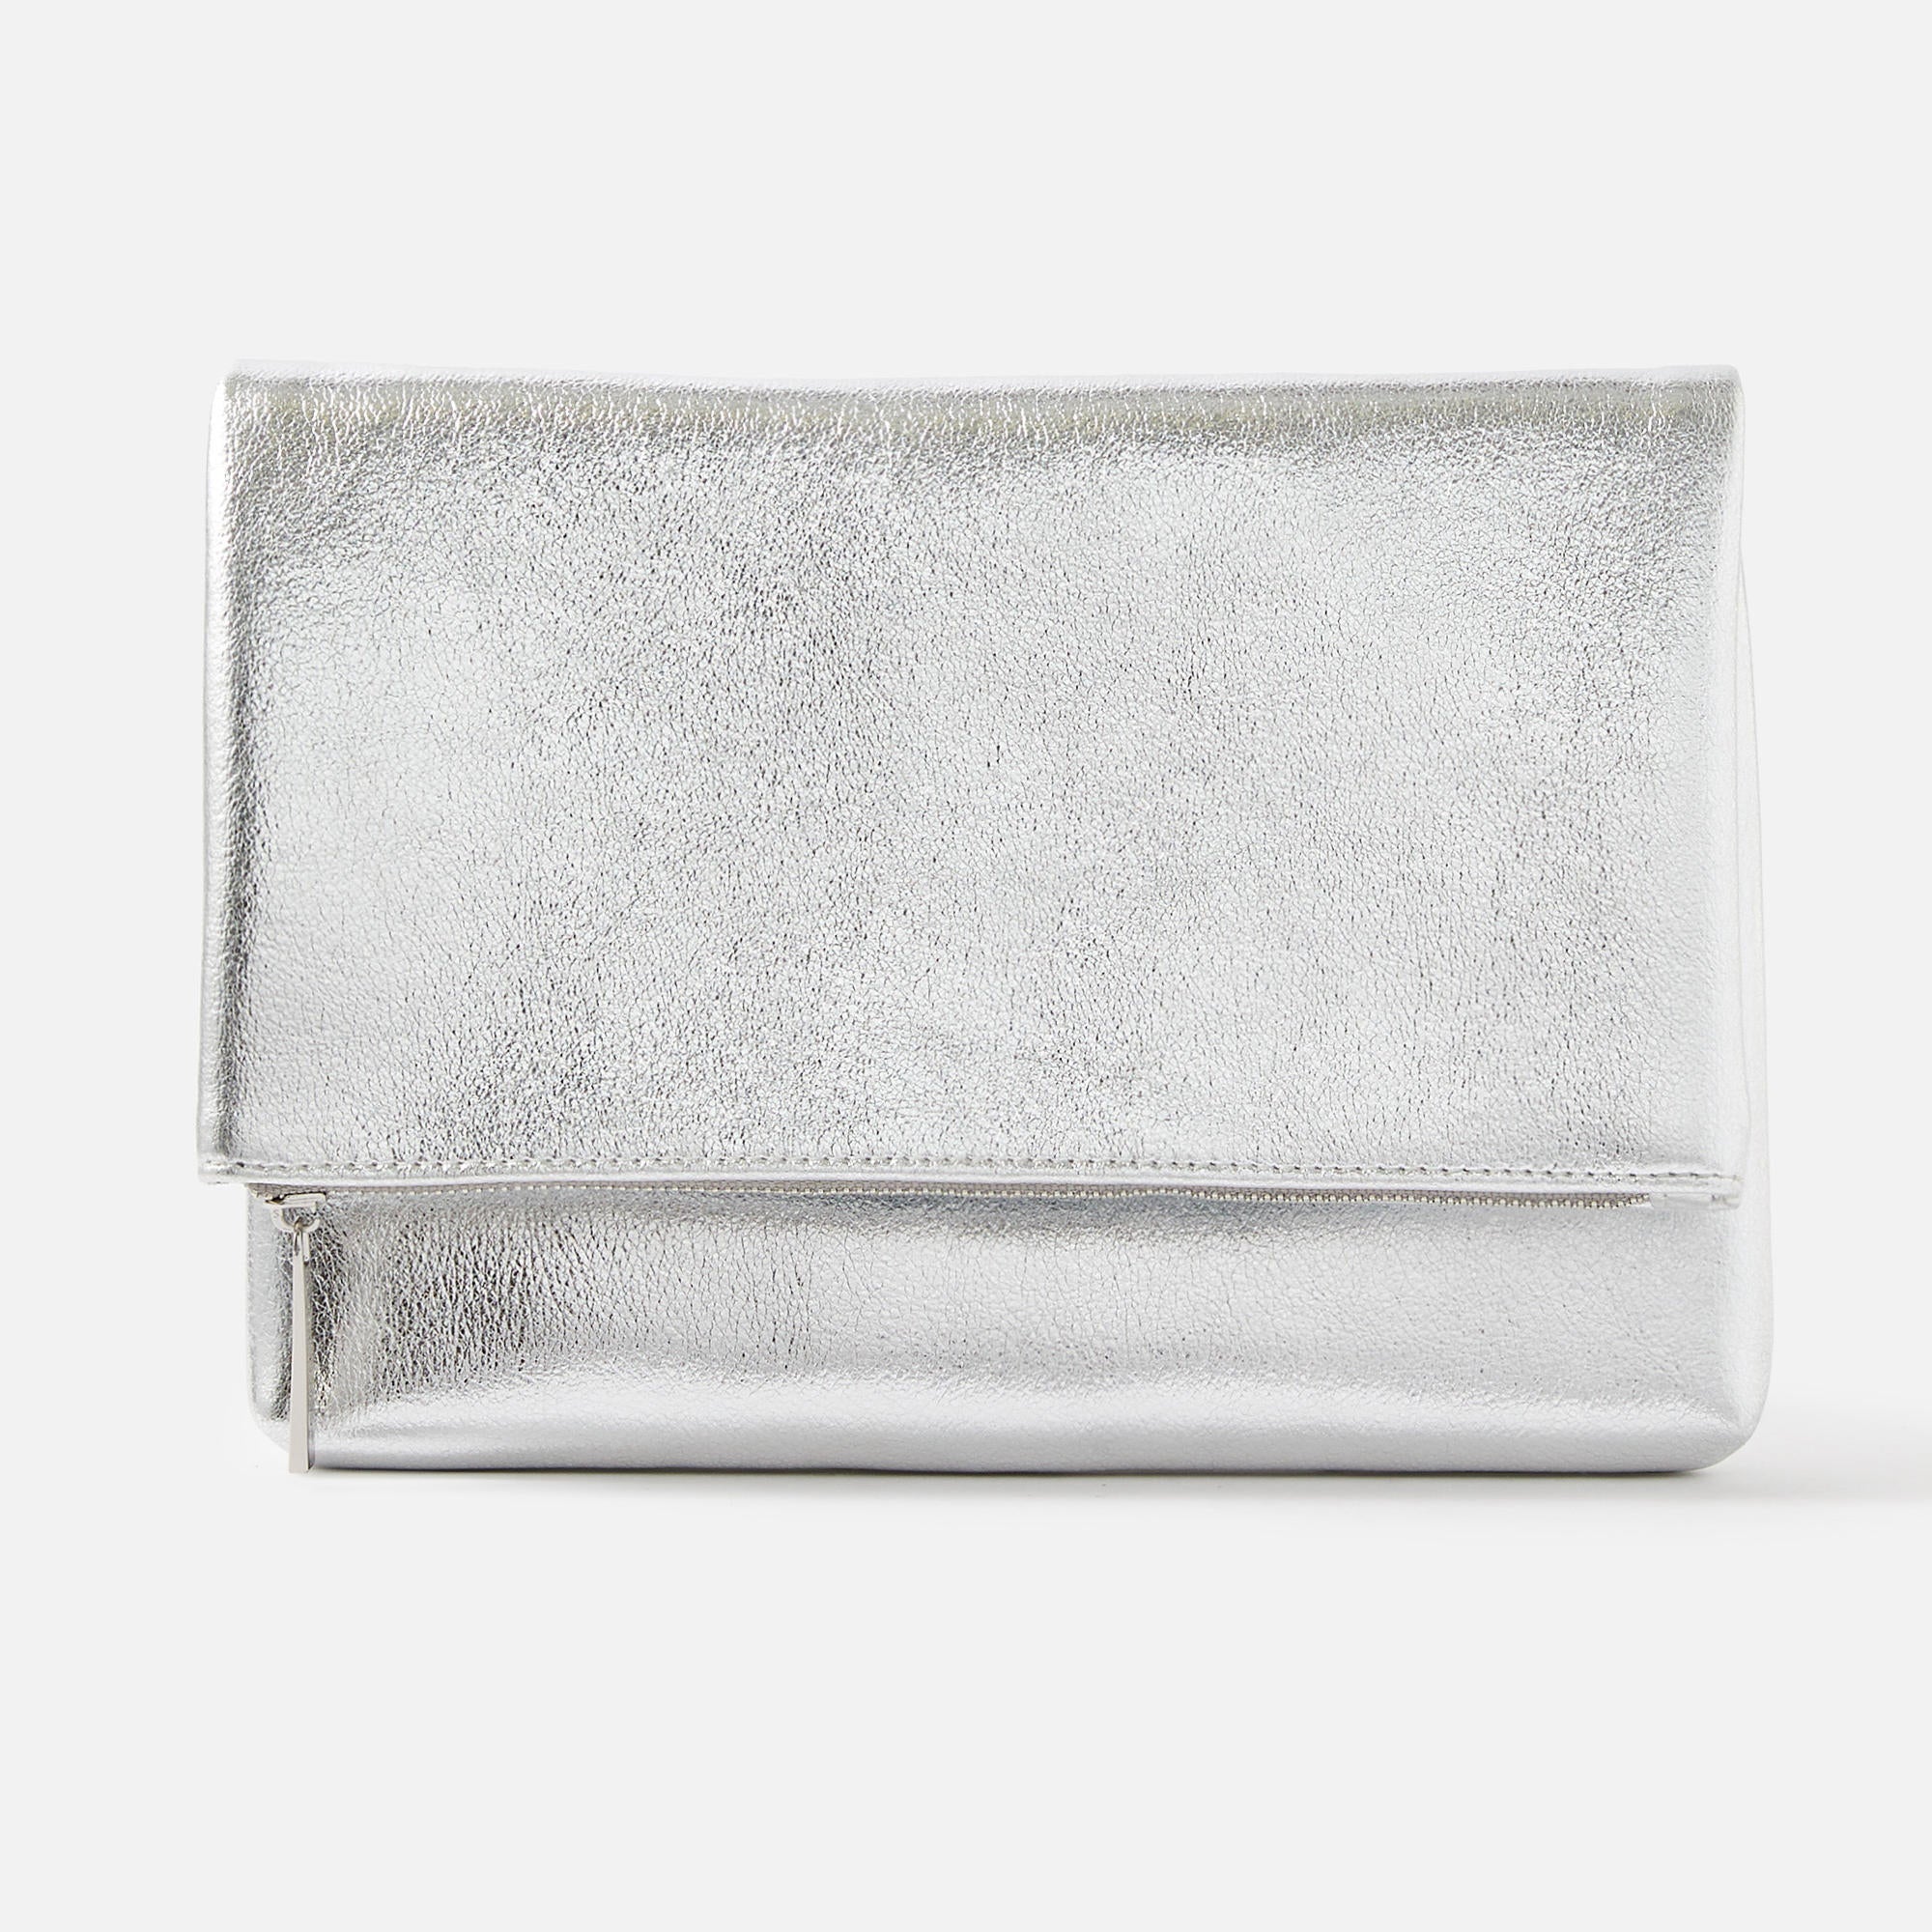 My Accessories London – Lange Clutch-Tasche in Liquid-Silber